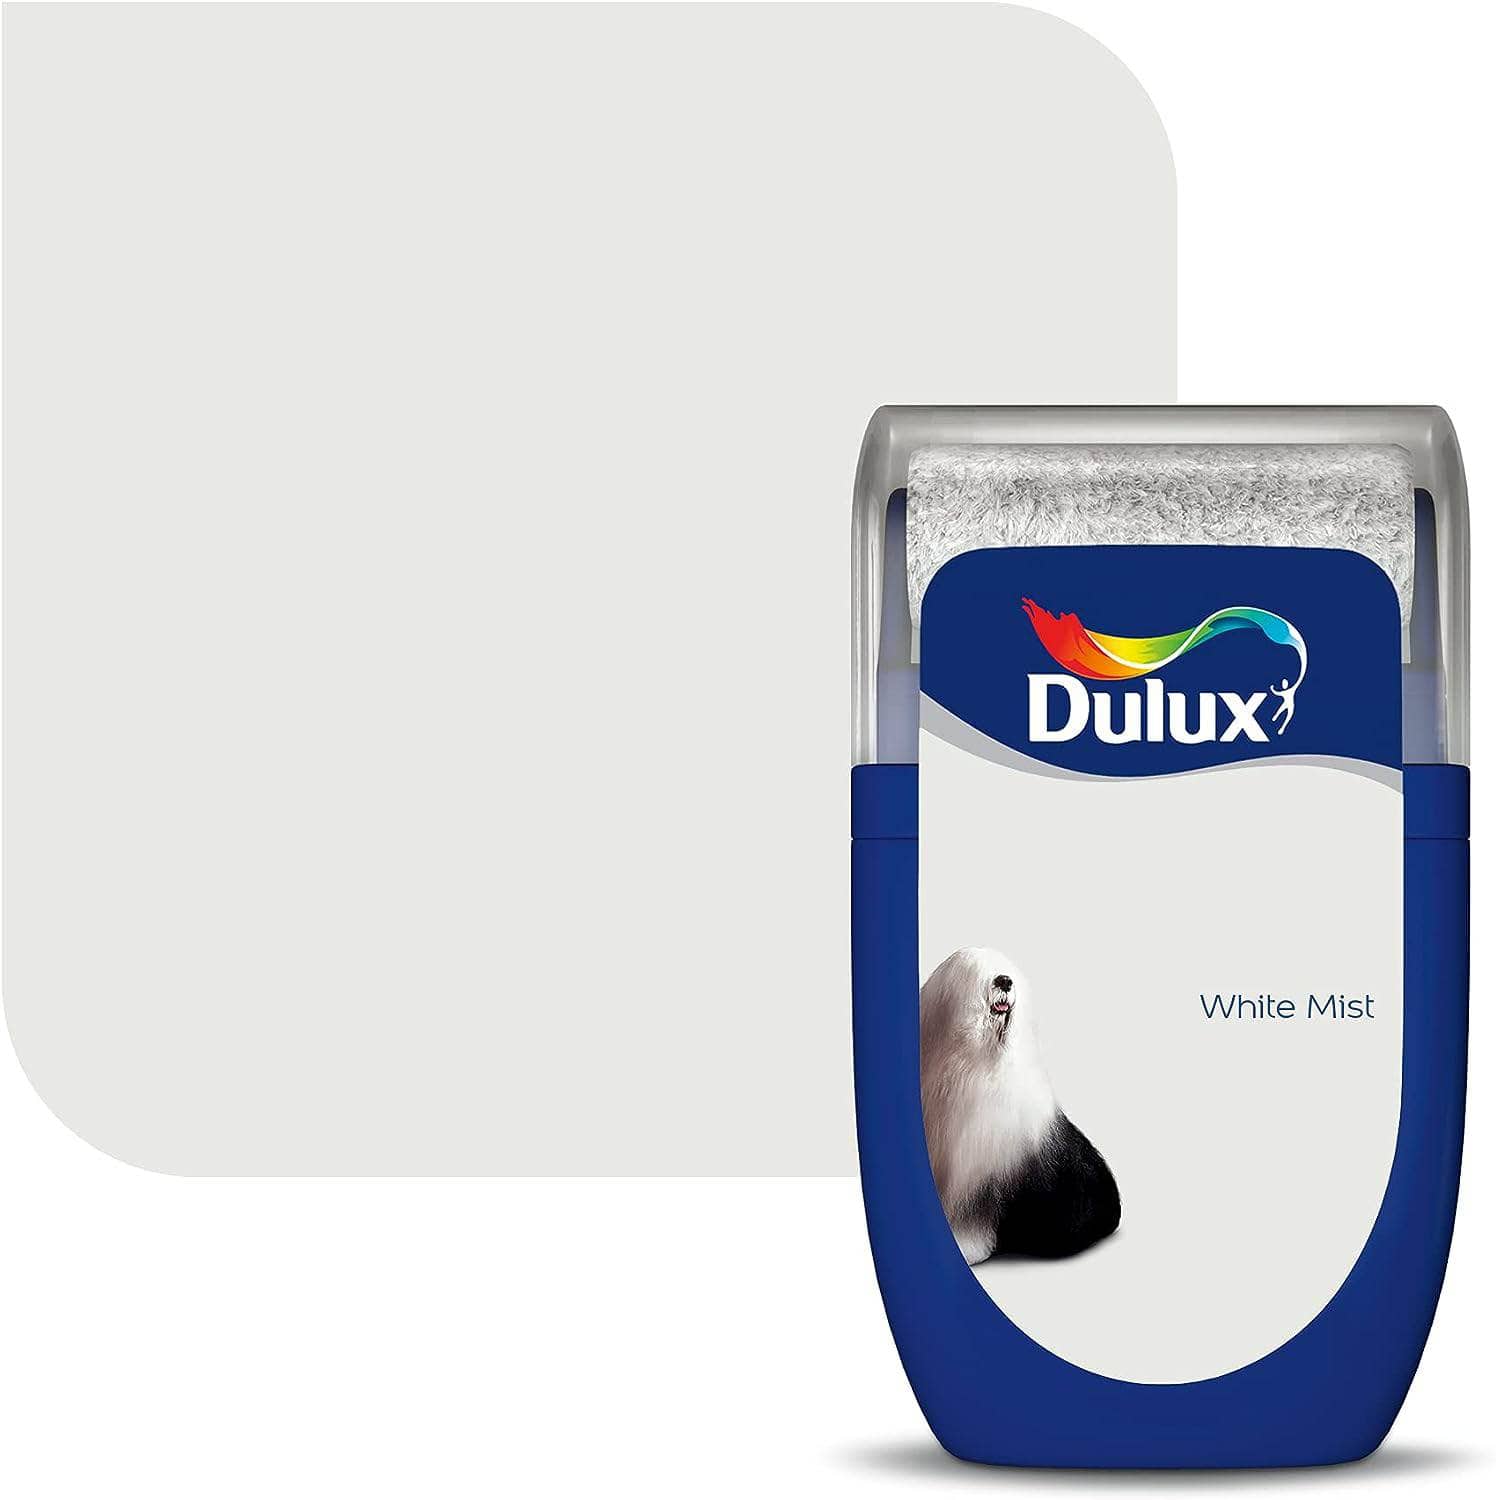 Dulux Easycare Bathroom Tester 30ml - White Mist  -  60005826